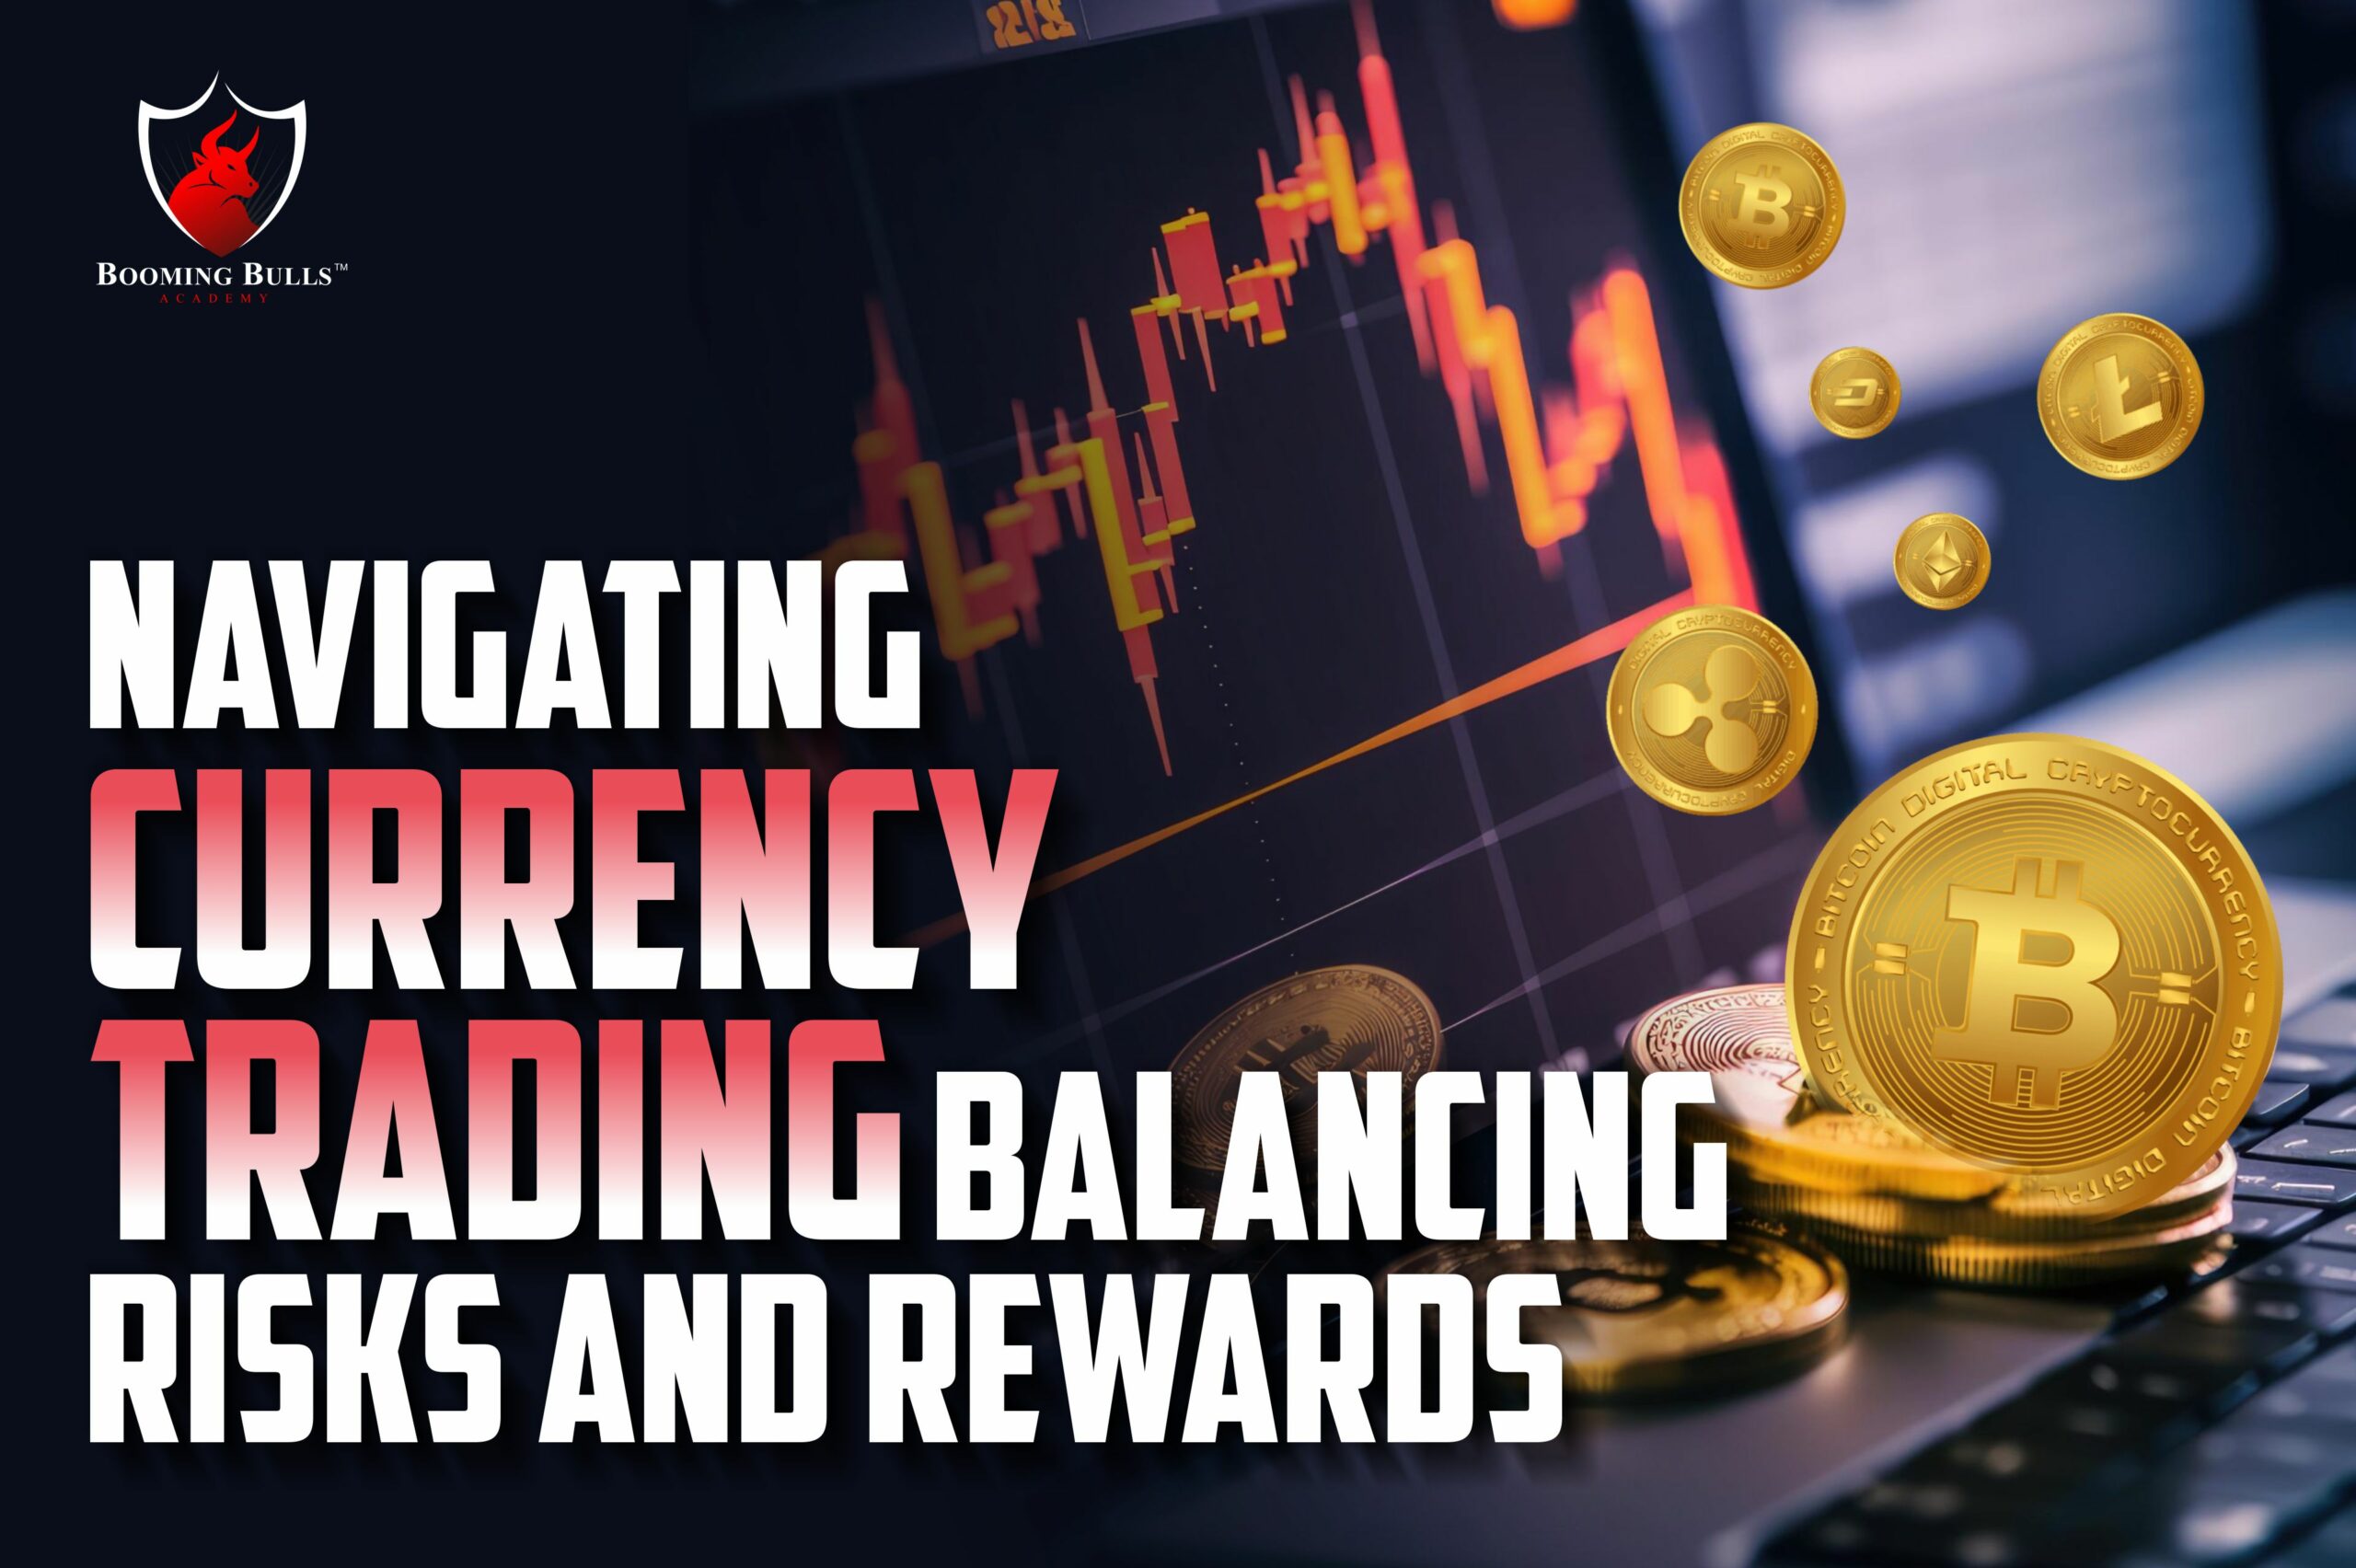 Navigating Currency Trading : Balancing Risks and Rewards